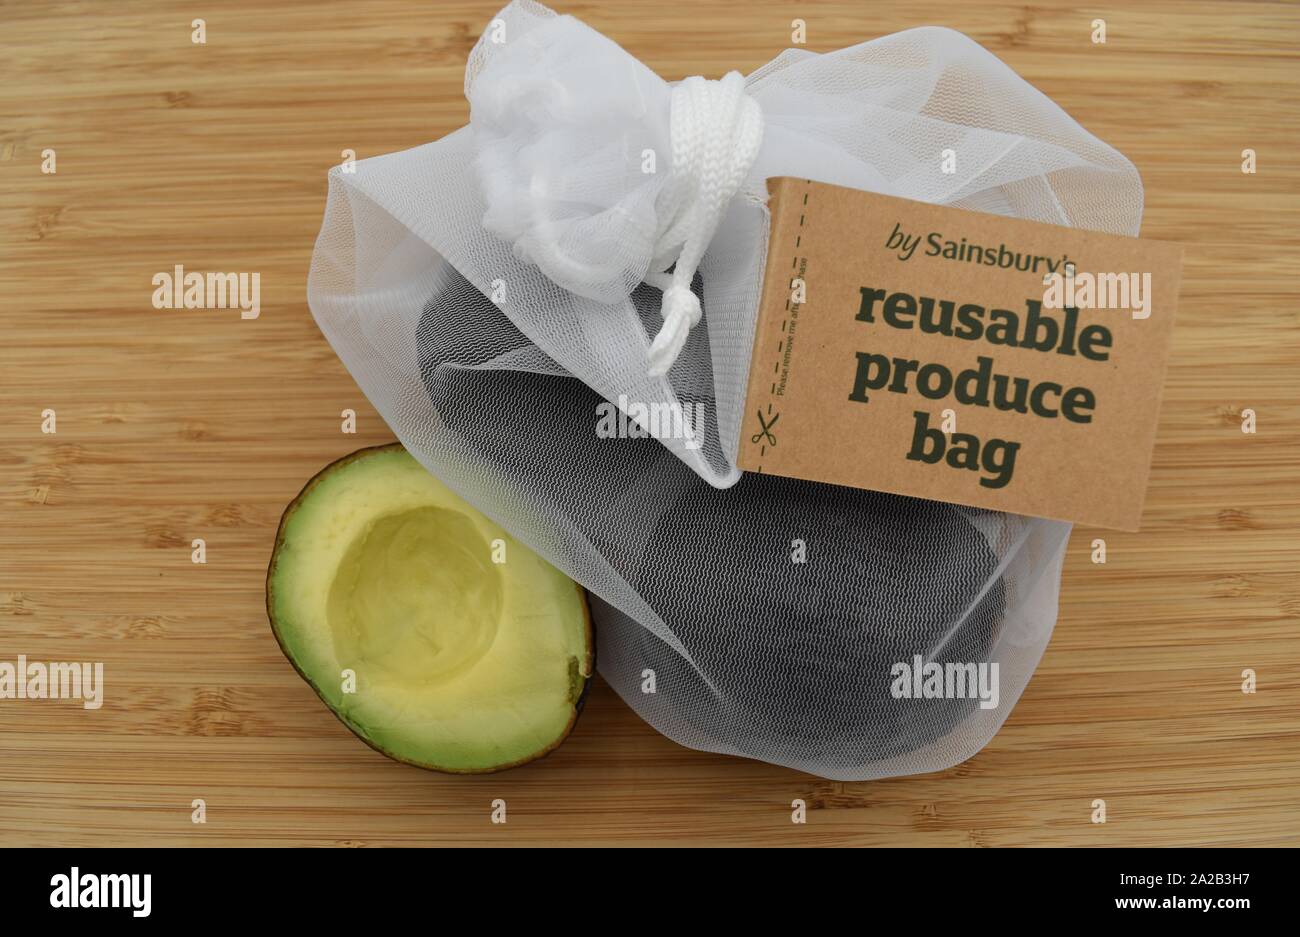 Sainsbury's produzieren wiederverwendbare Tasche. Sainsbury's haben Plastiktüten mit diesem mit Kordelzug aus 100% recycelten Plastikflaschen ersetzt. Stockfoto